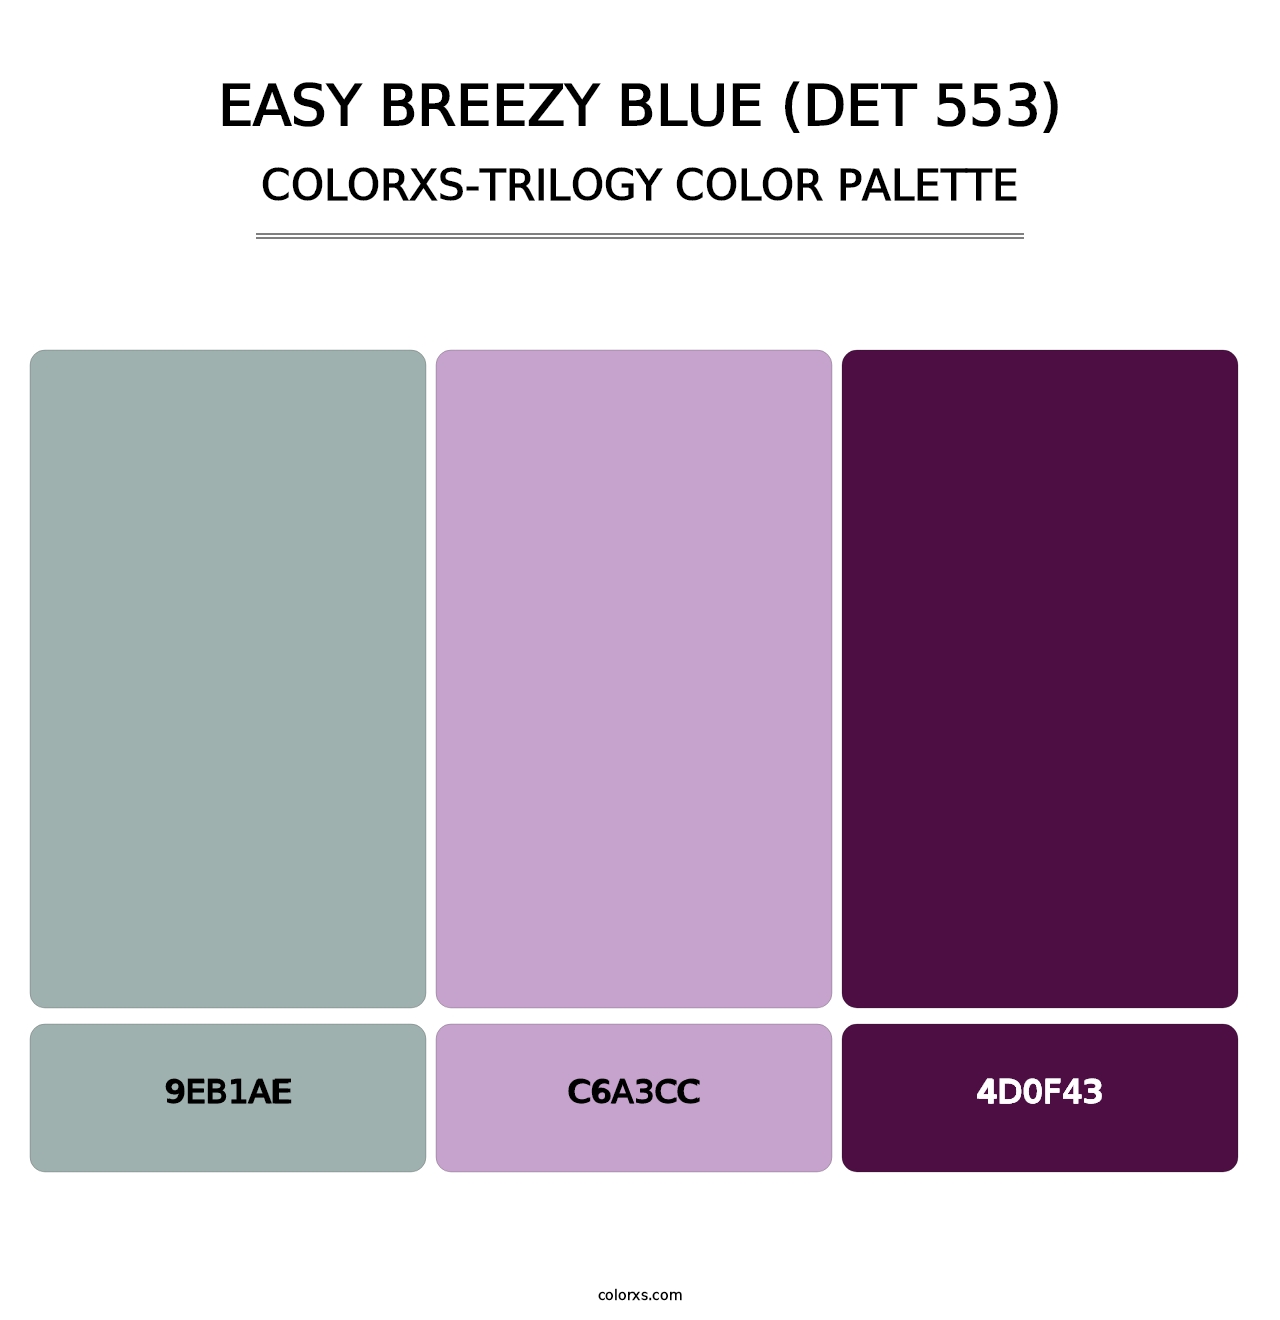 Easy Breezy Blue (DET 553) - Colorxs Trilogy Palette